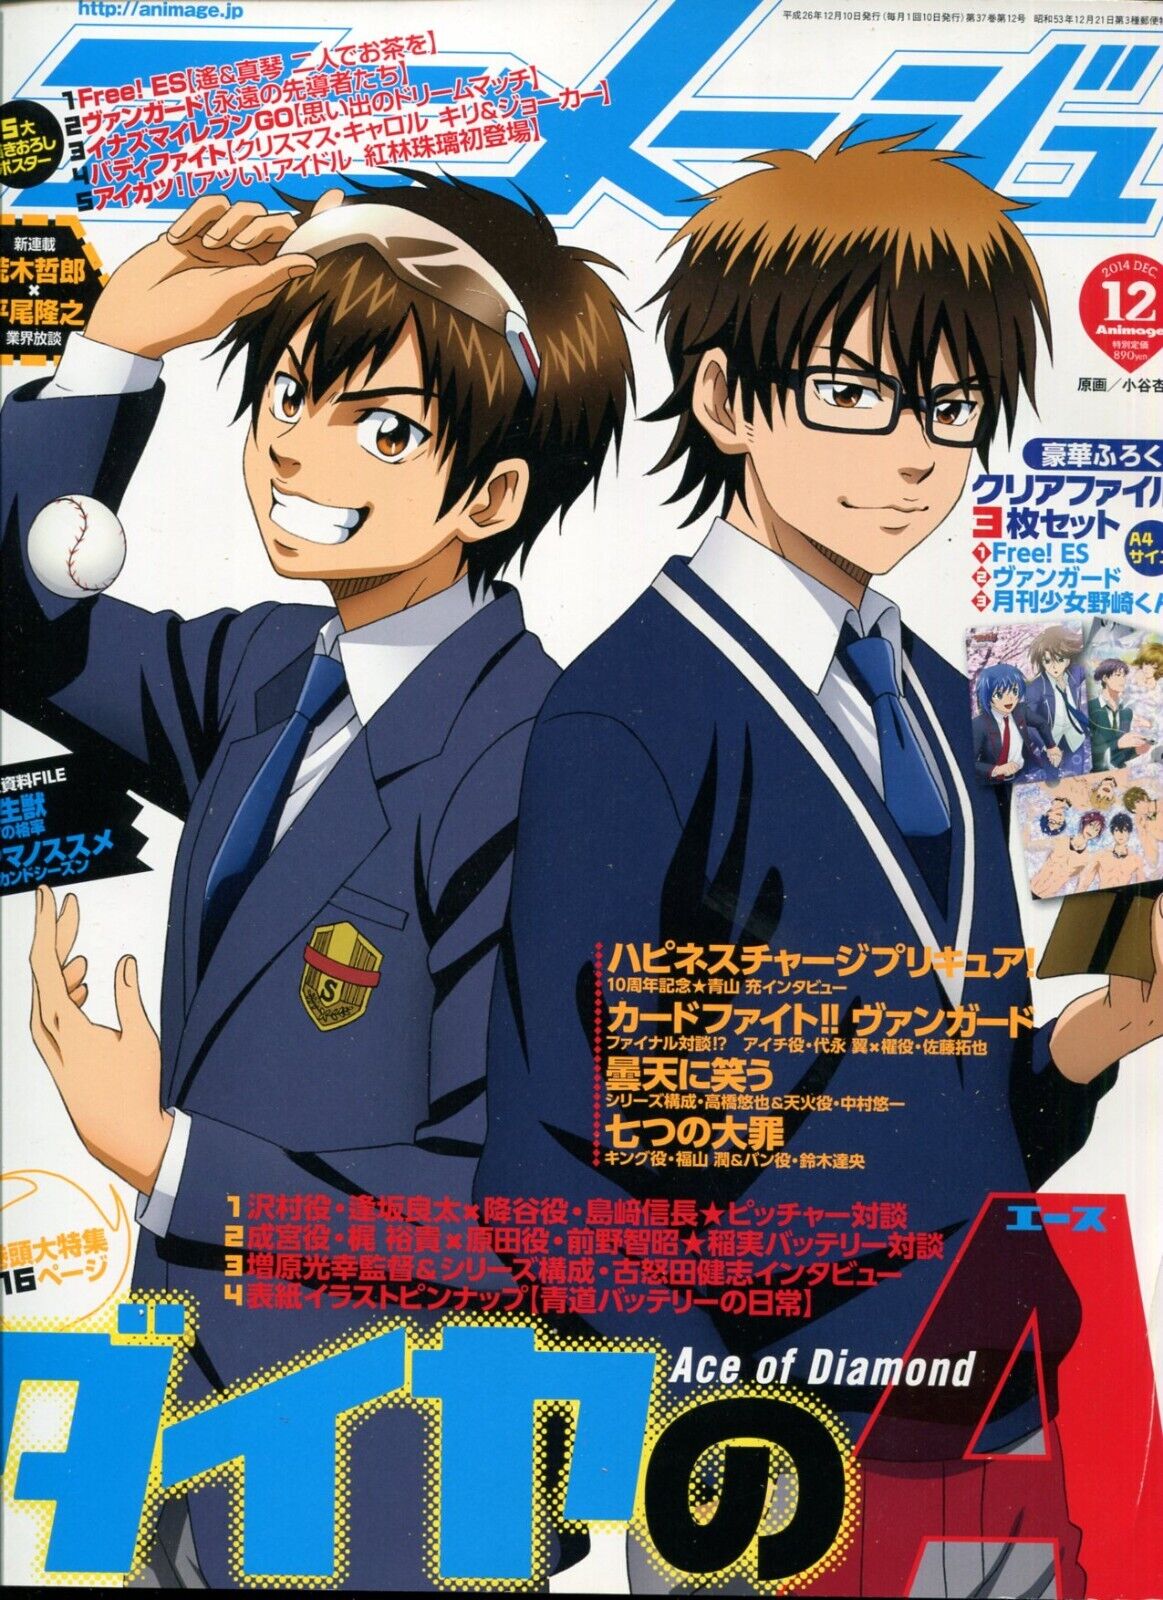 Animage animege 2014 Dec. Japanese Magazine Anime Animation Manga 240608